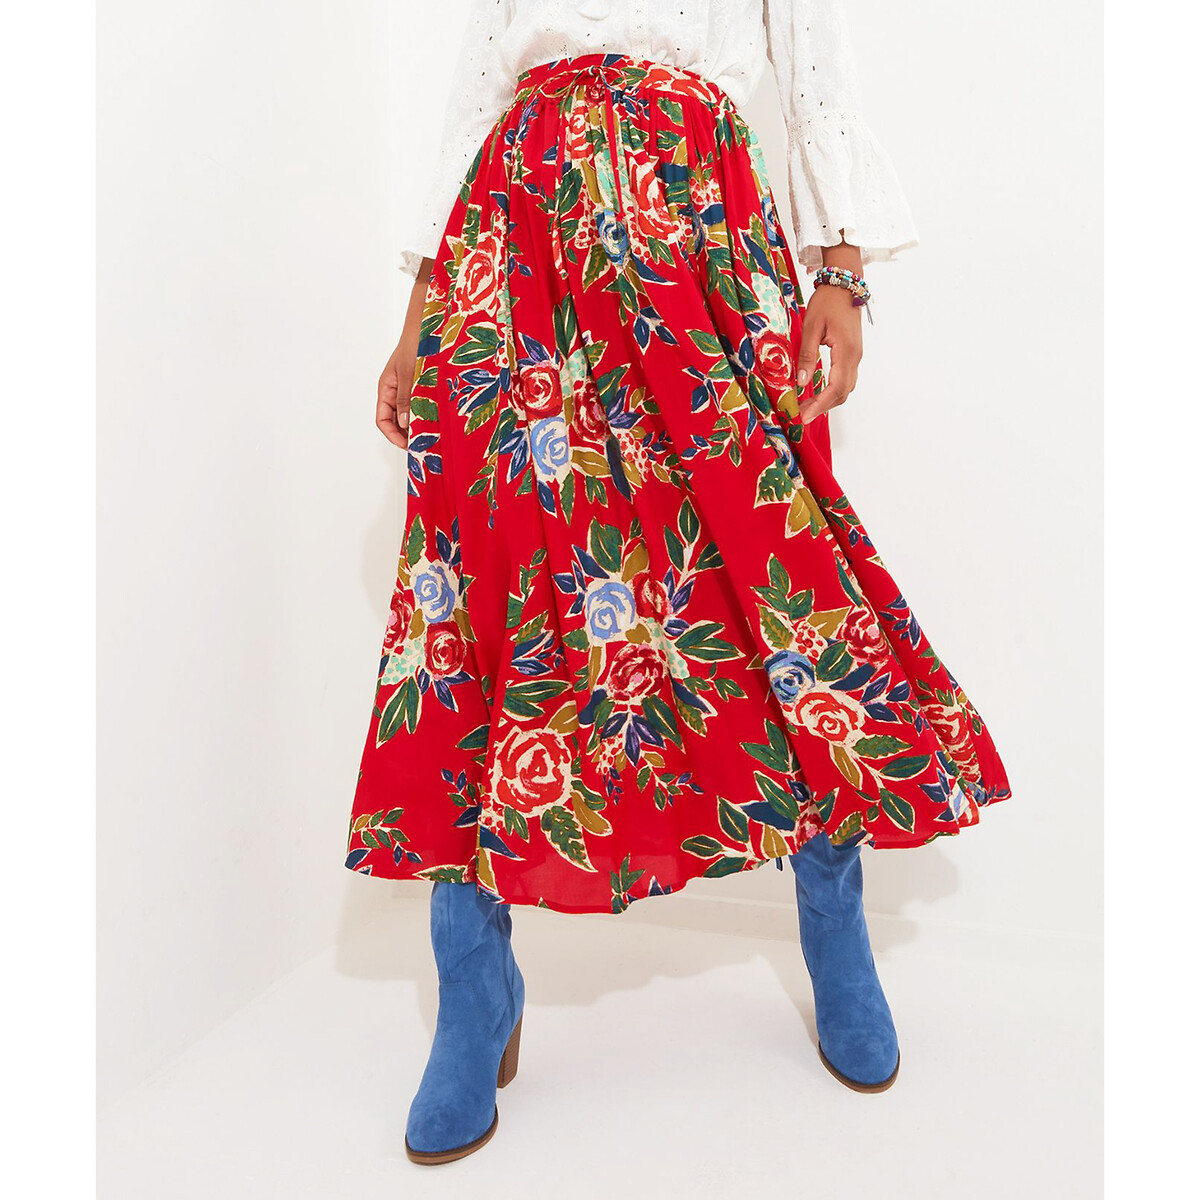 юбка laredoute юбка длинная с анималистическим принтом 40 fr 46 rus бежевый Юбка длинная с цветочным рисунком 40 (FR) - 46 (RUS) красный